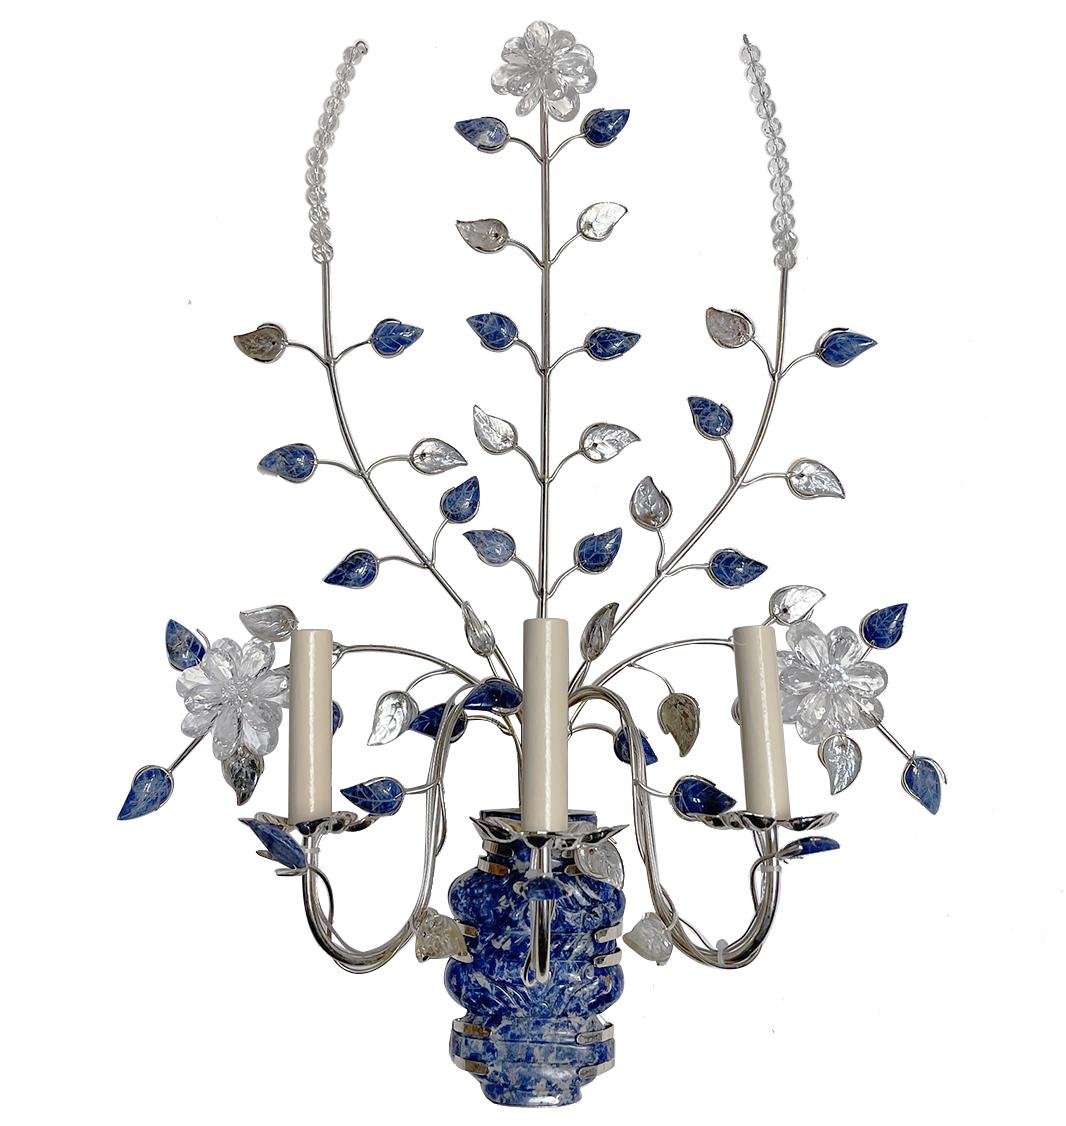 Paire d'appliques françaises à trois bras en métal argenté, datant de la fin des années 1960, avec corps en pierre lapis-lazuli, feuilles en verre moulé et fleurs en cristal.

Mesures :
Hauteur : 28